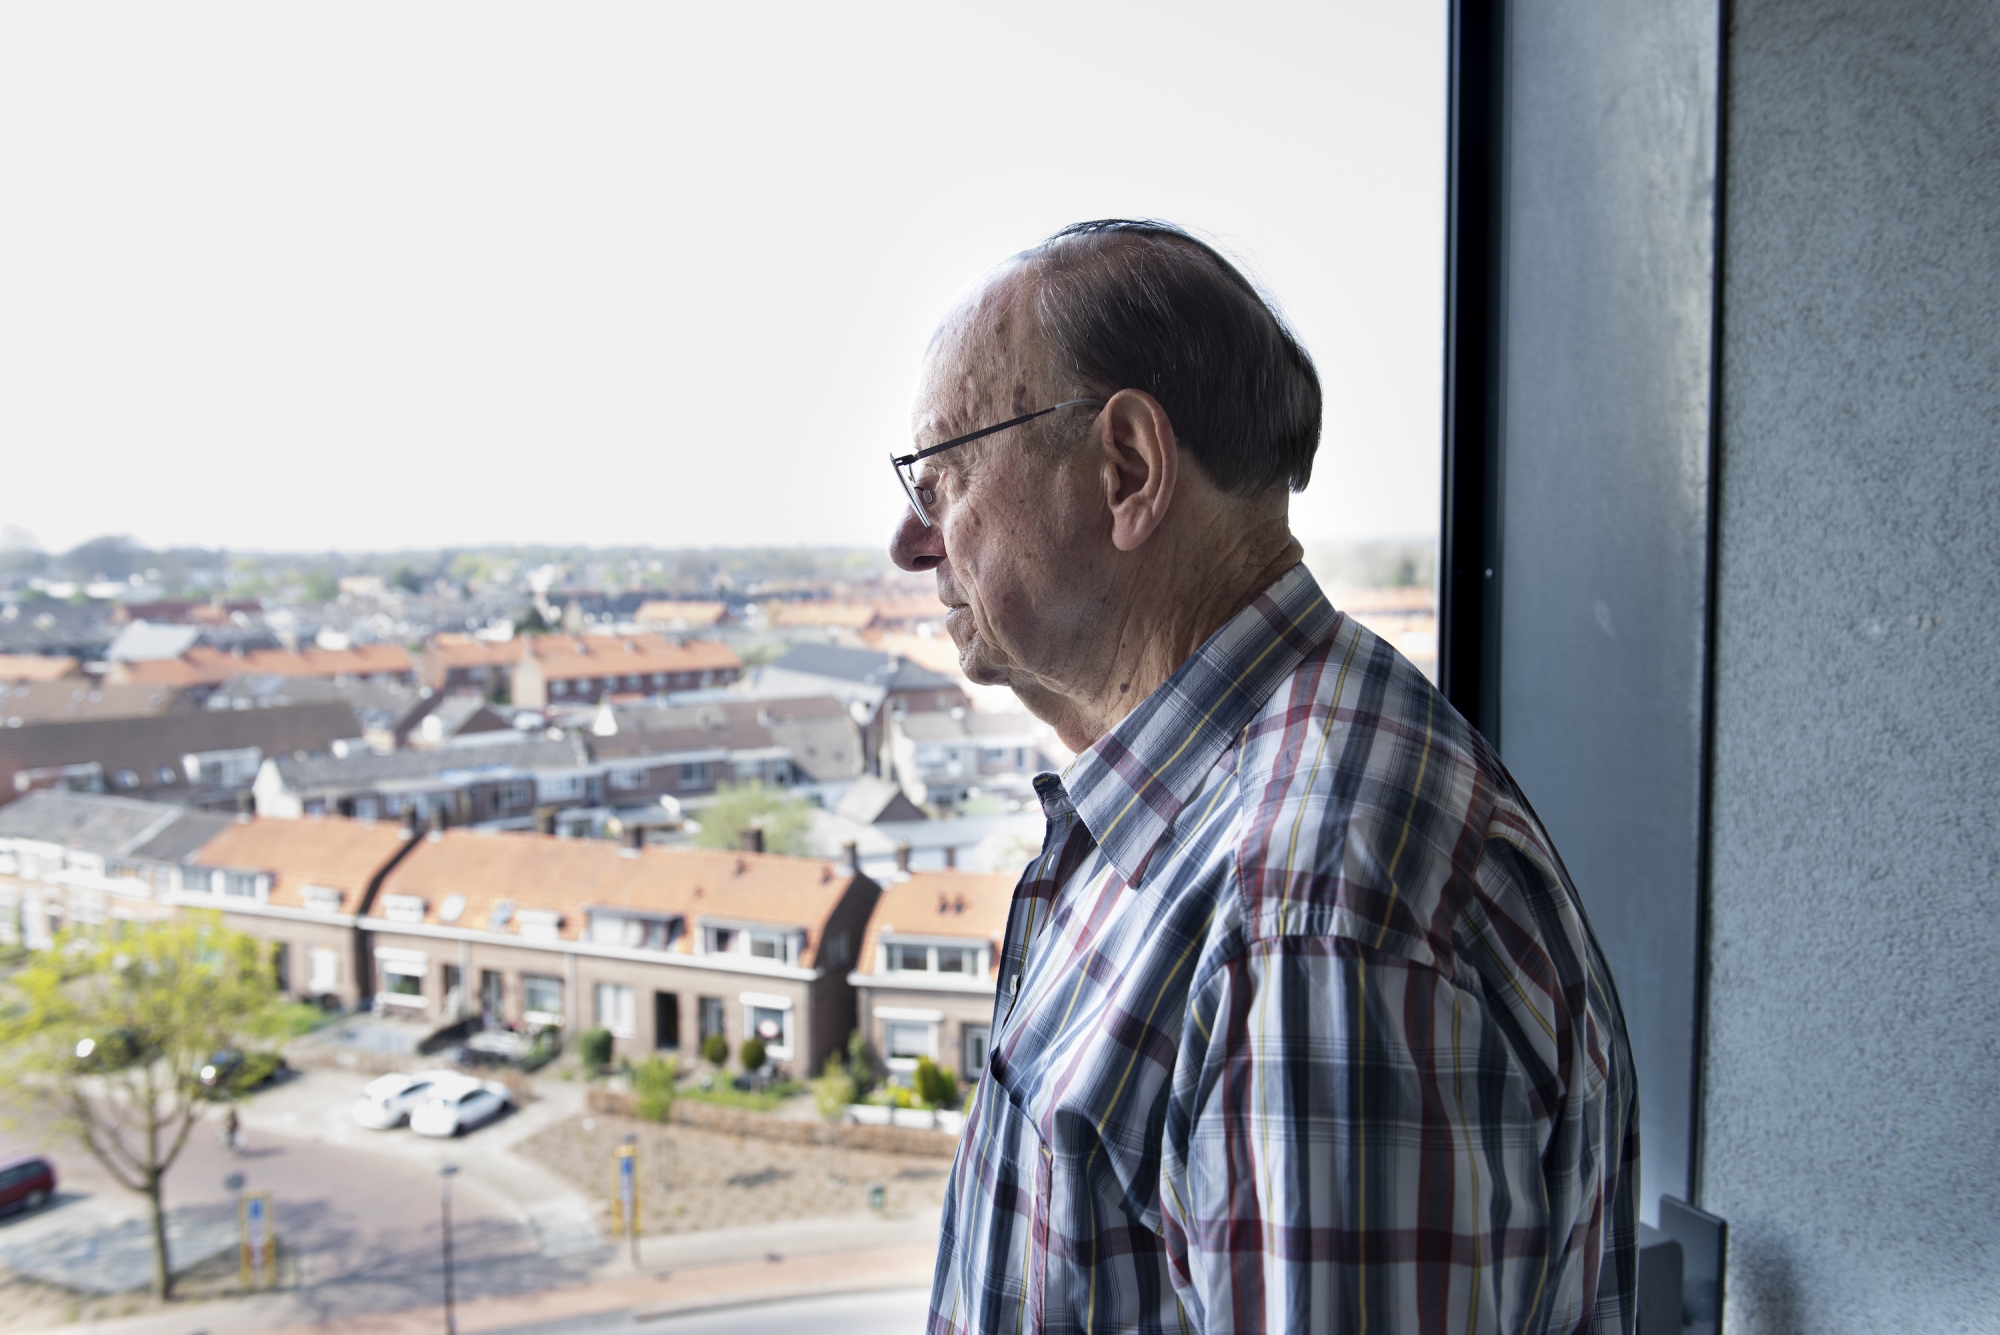 Joop kijkt vanuit het balkon van zijn appartement over de stad Tiel